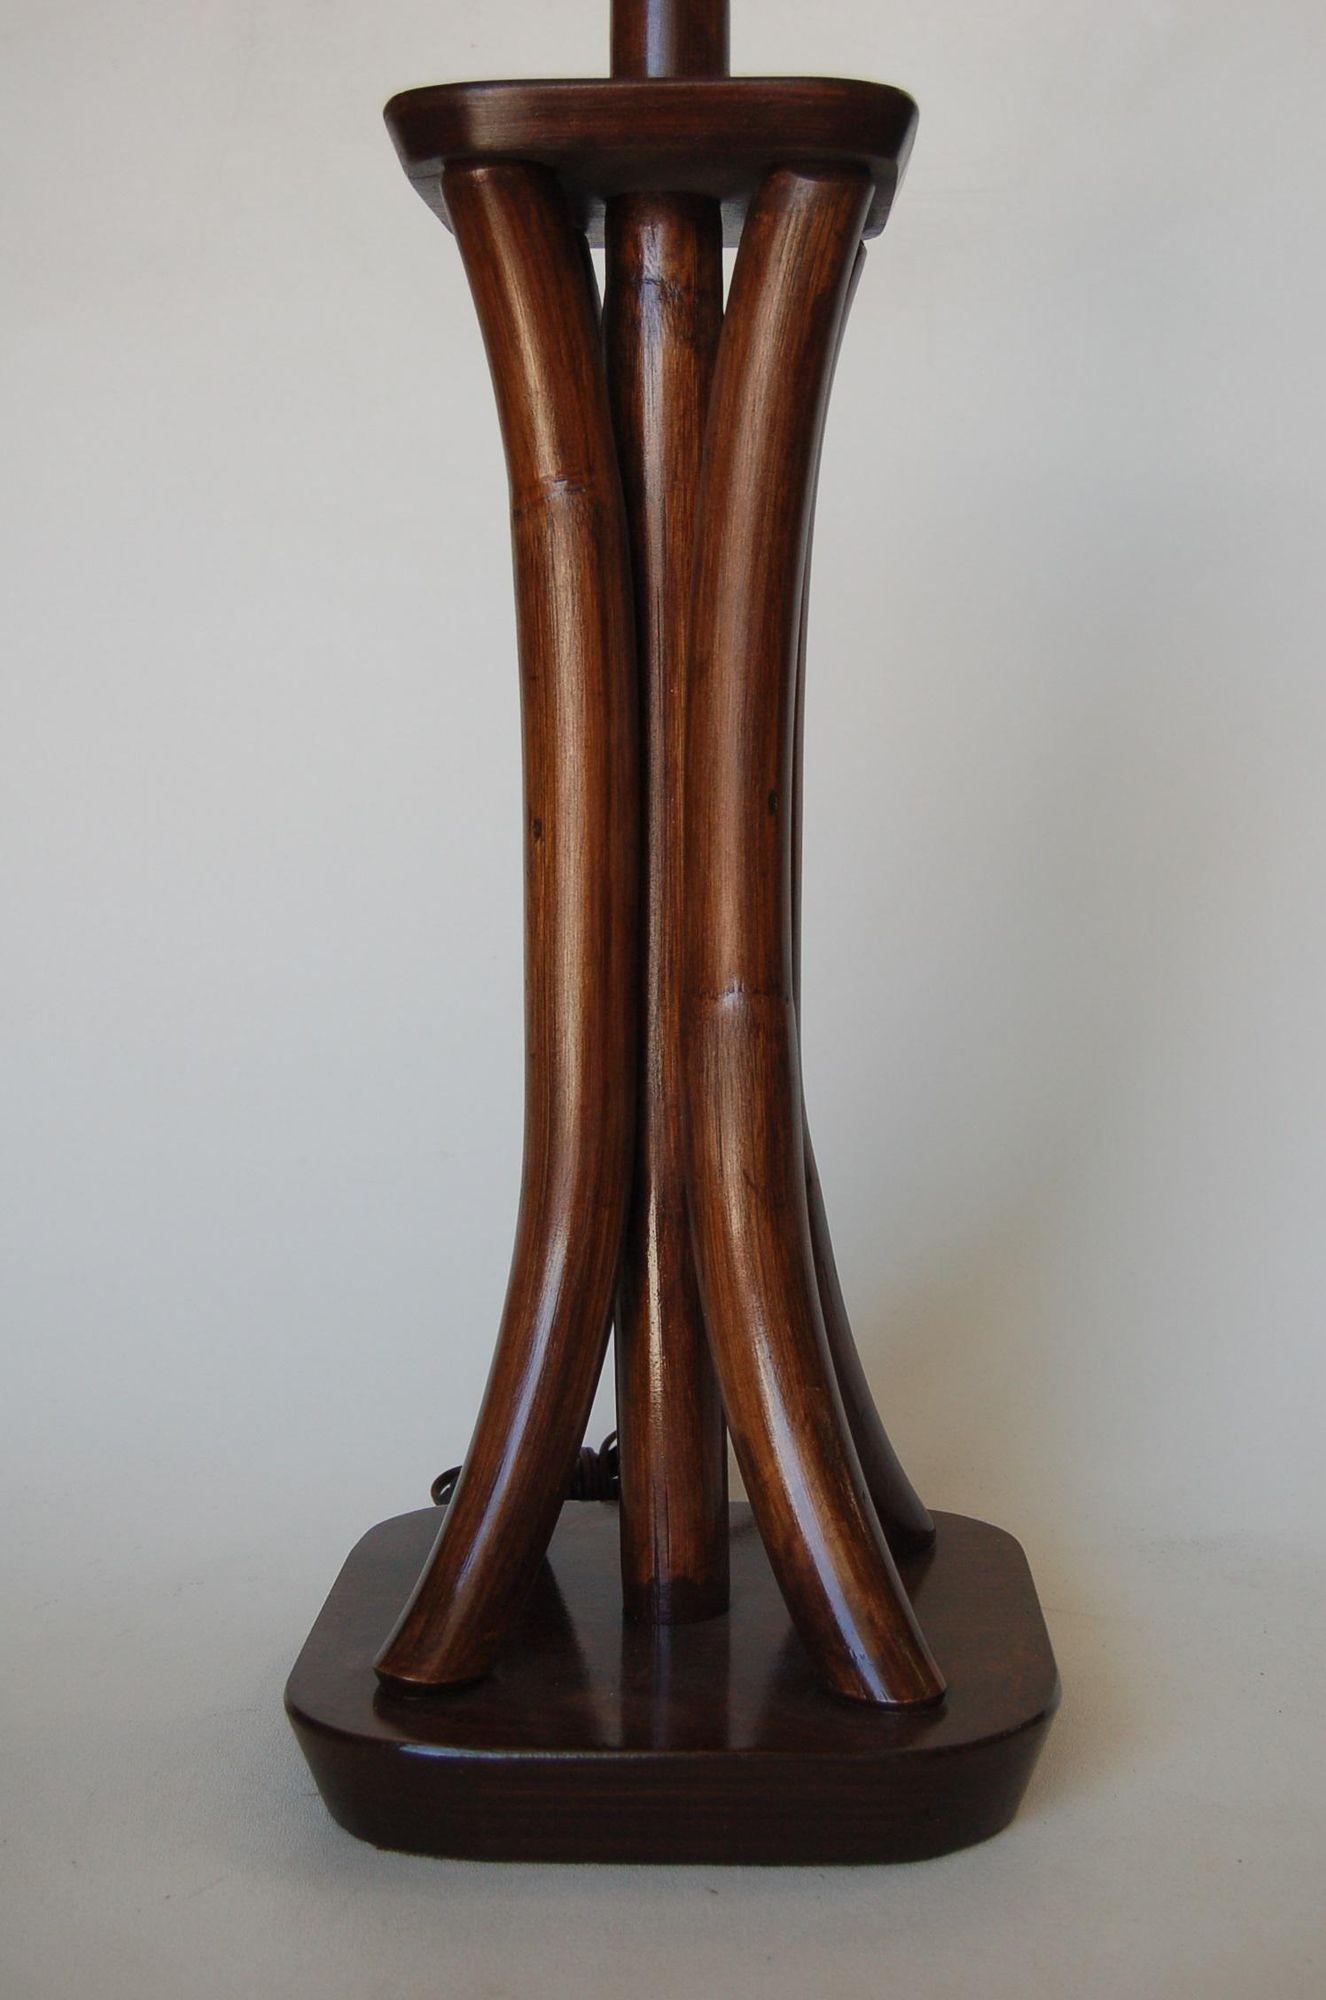 Lampe de table à quatre branches en rotin courbé, teinté foncé, restaurée, avec bases en acajou.

Mesure 8,5